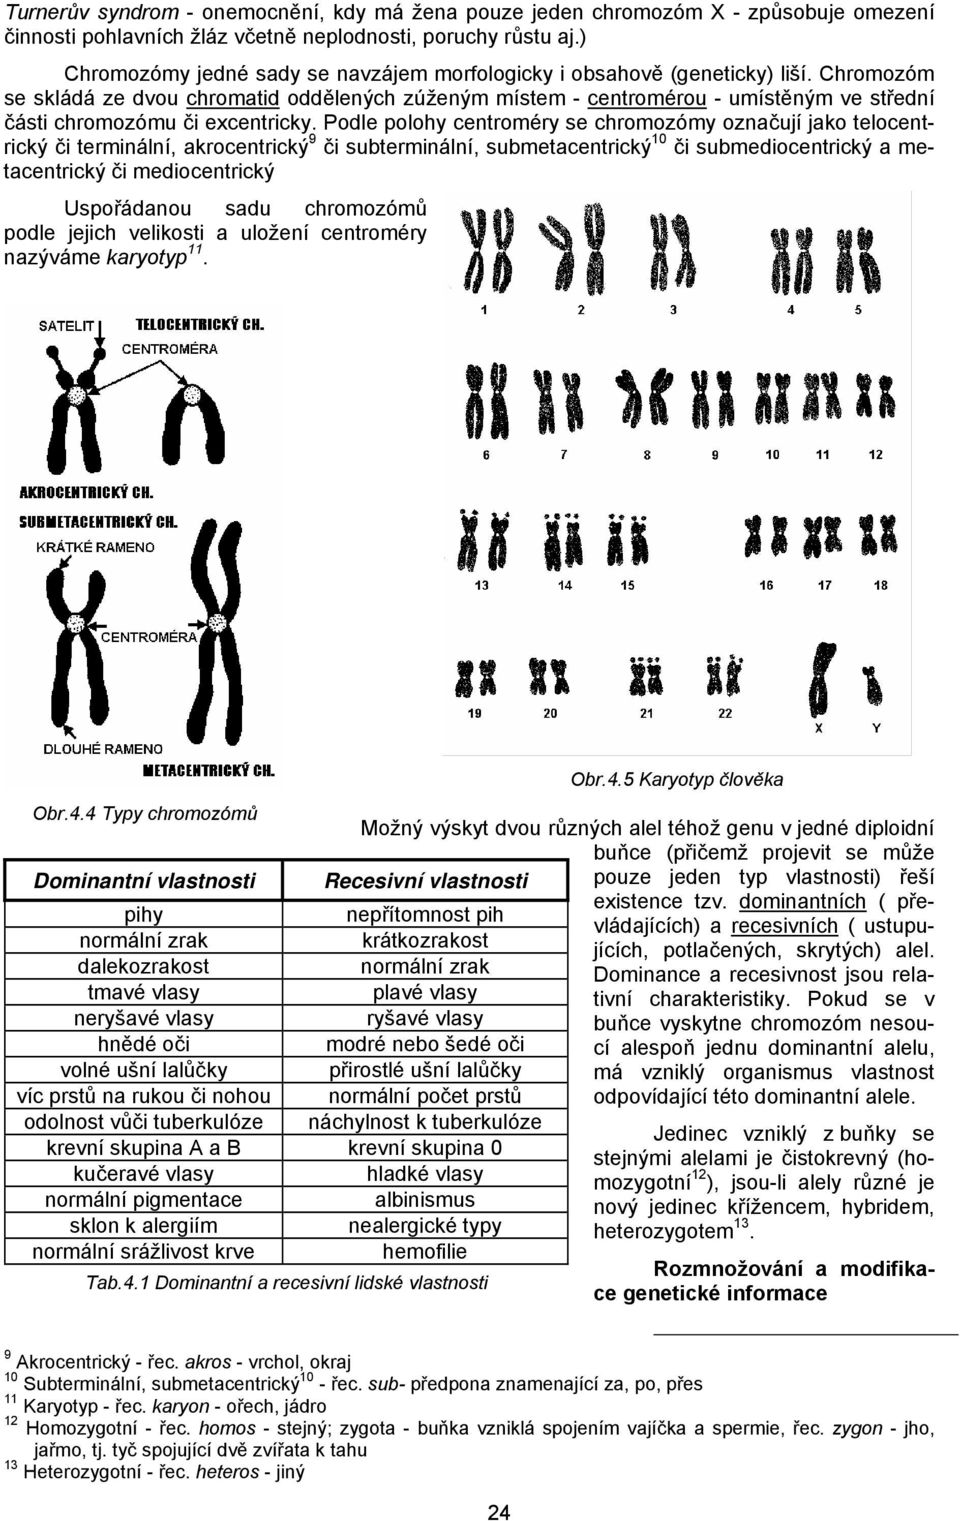 Chromozóm se skládá ze dvou chromatid oddělených zúženým místem - centromérou - umístěným ve střední části chromozómu či excentricky.